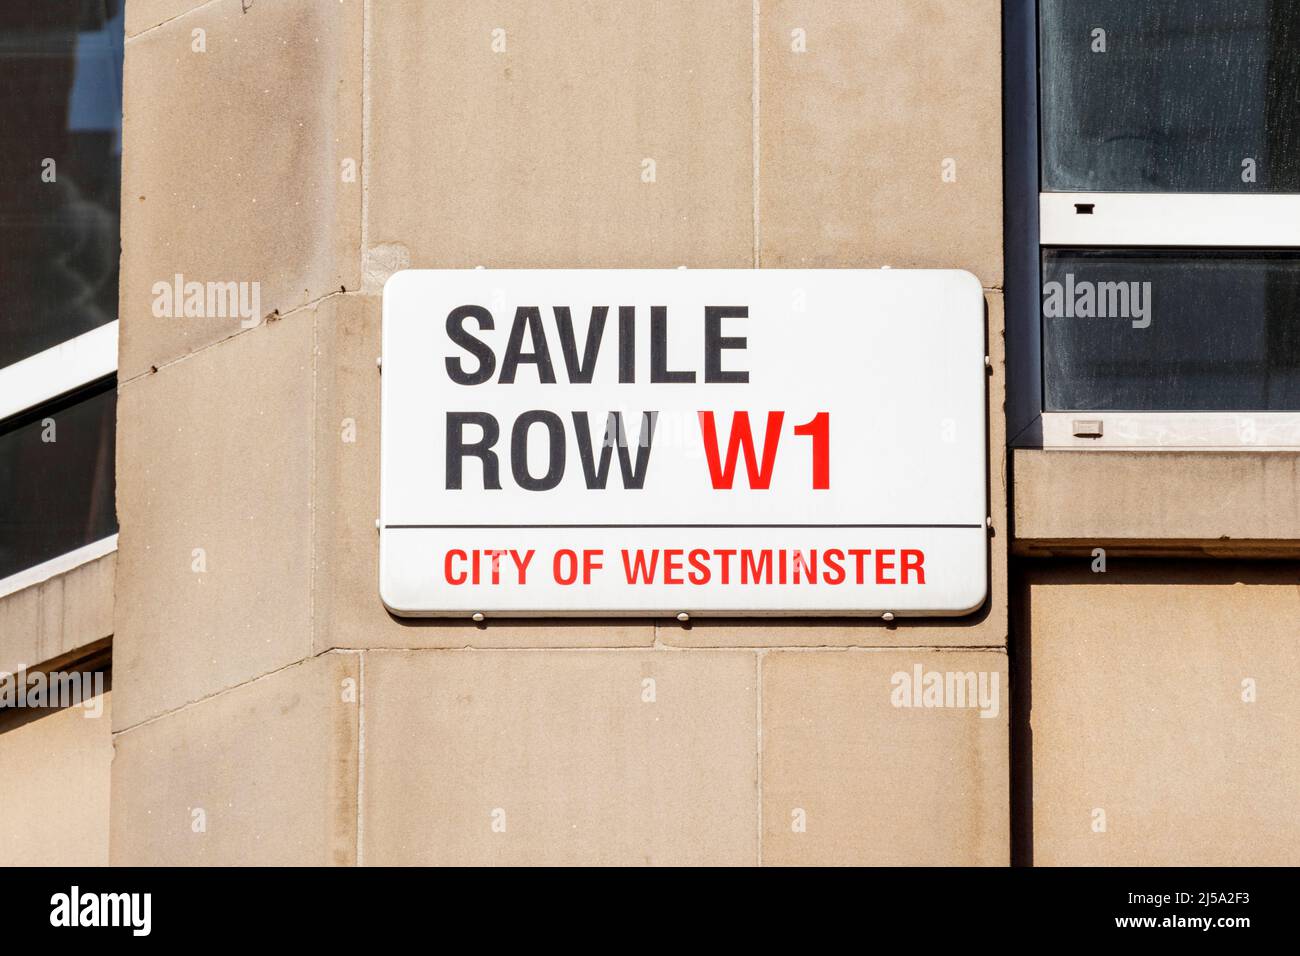 Calle placa de nombre en Savile Row, una calle en Mayfair Nown principalmente por su tradicional a medida sastring para hombres, Londres, Reino Unido Foto de stock